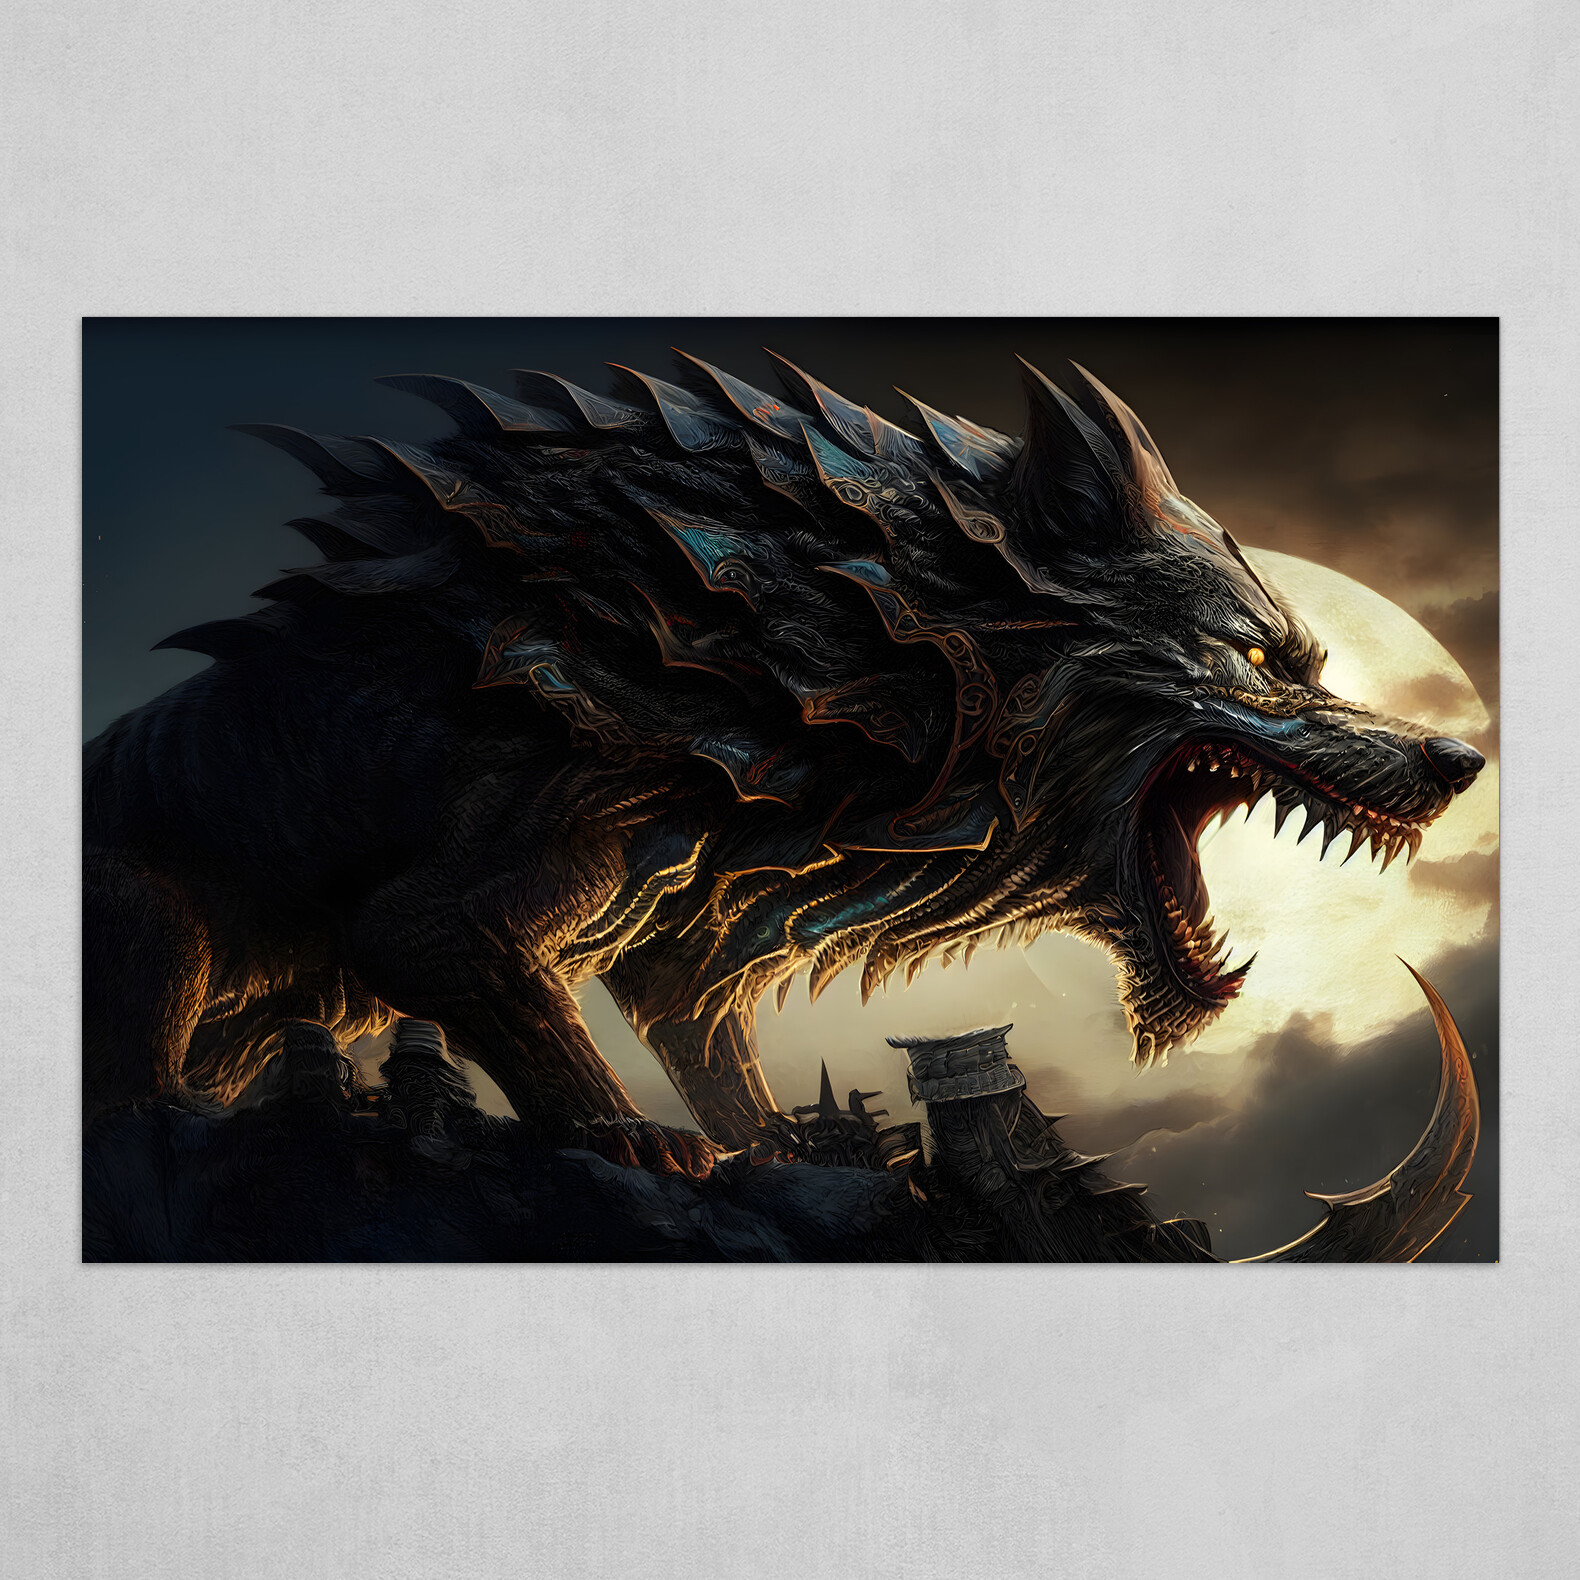 Fenrir the Gigantic Ferocious Wolf of Norse Mythology